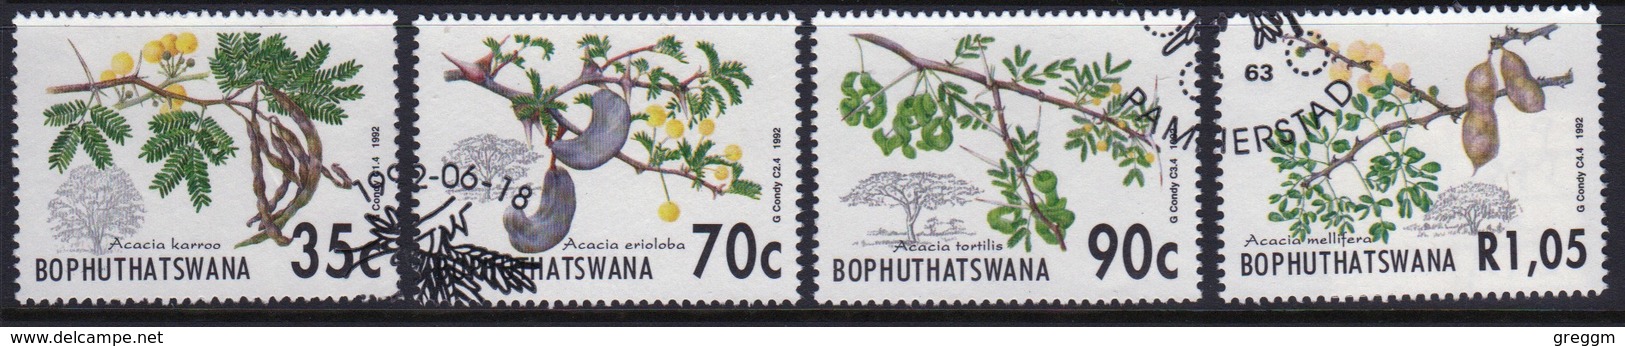 Bophuthatswana Set Of Stamps Celebrating Acacia Trees From 1992. - Bophuthatswana